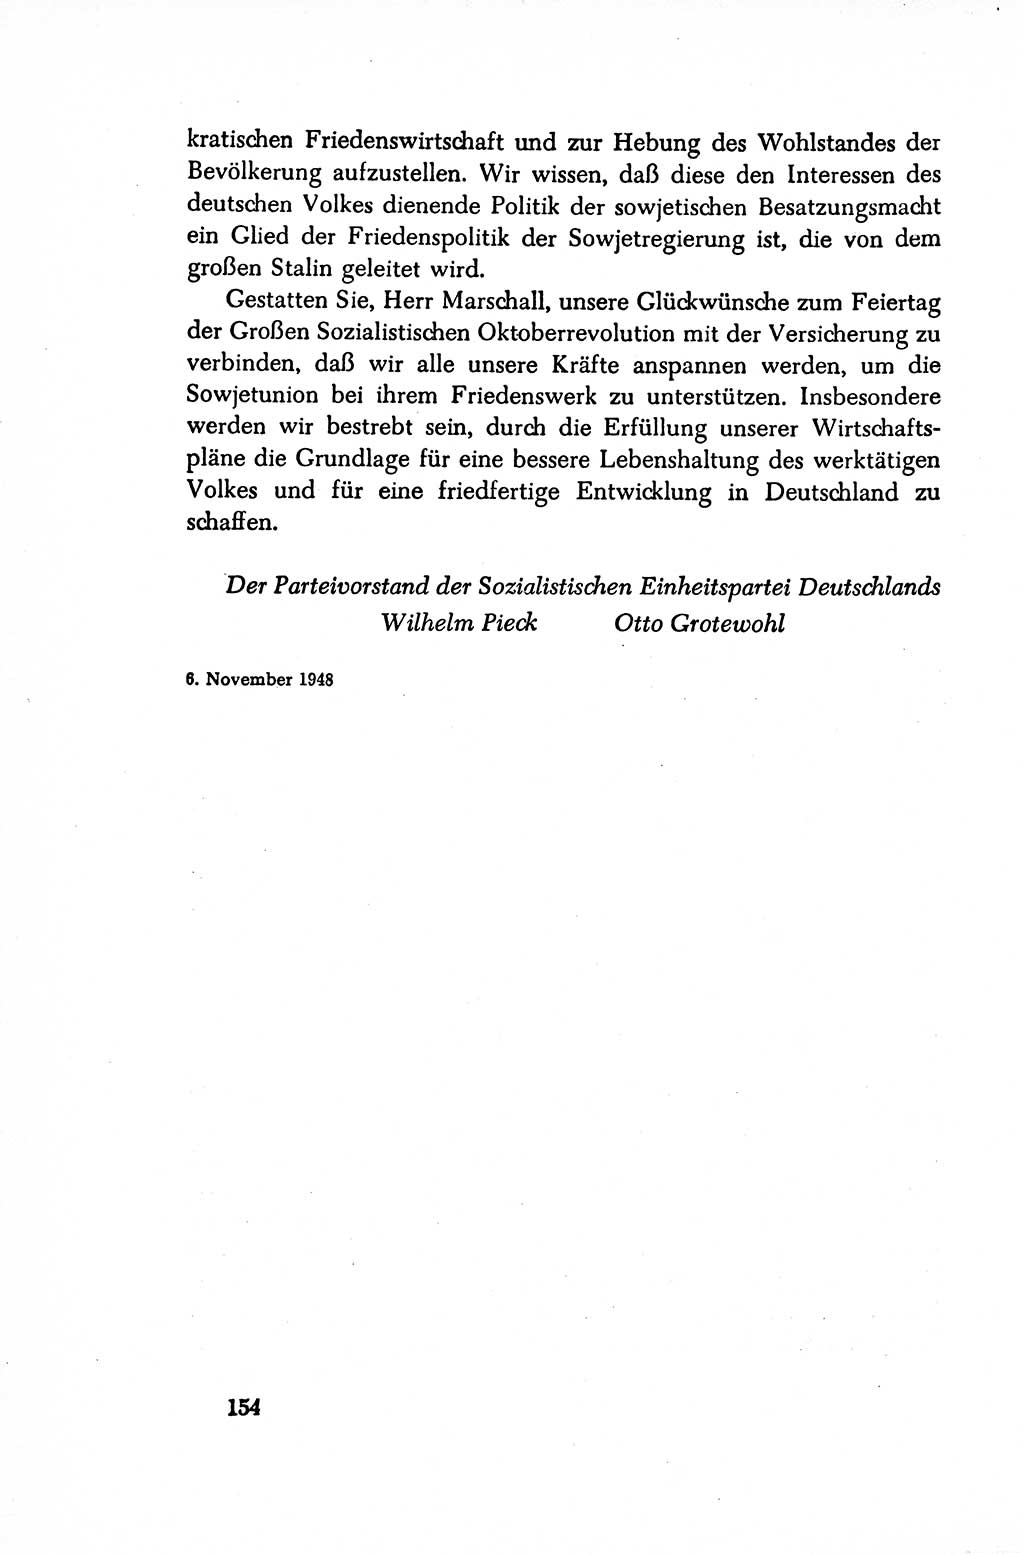 Dokumente der Sozialistischen Einheitspartei Deutschlands (SED) [Sowjetische Besatzungszone (SBZ) Deutschlands/Deutsche Demokratische Republik (DDR)] 1948-1950, Seite 154 (Dok. SED SBZ Dtl. DDR 1948-1950, S. 154)